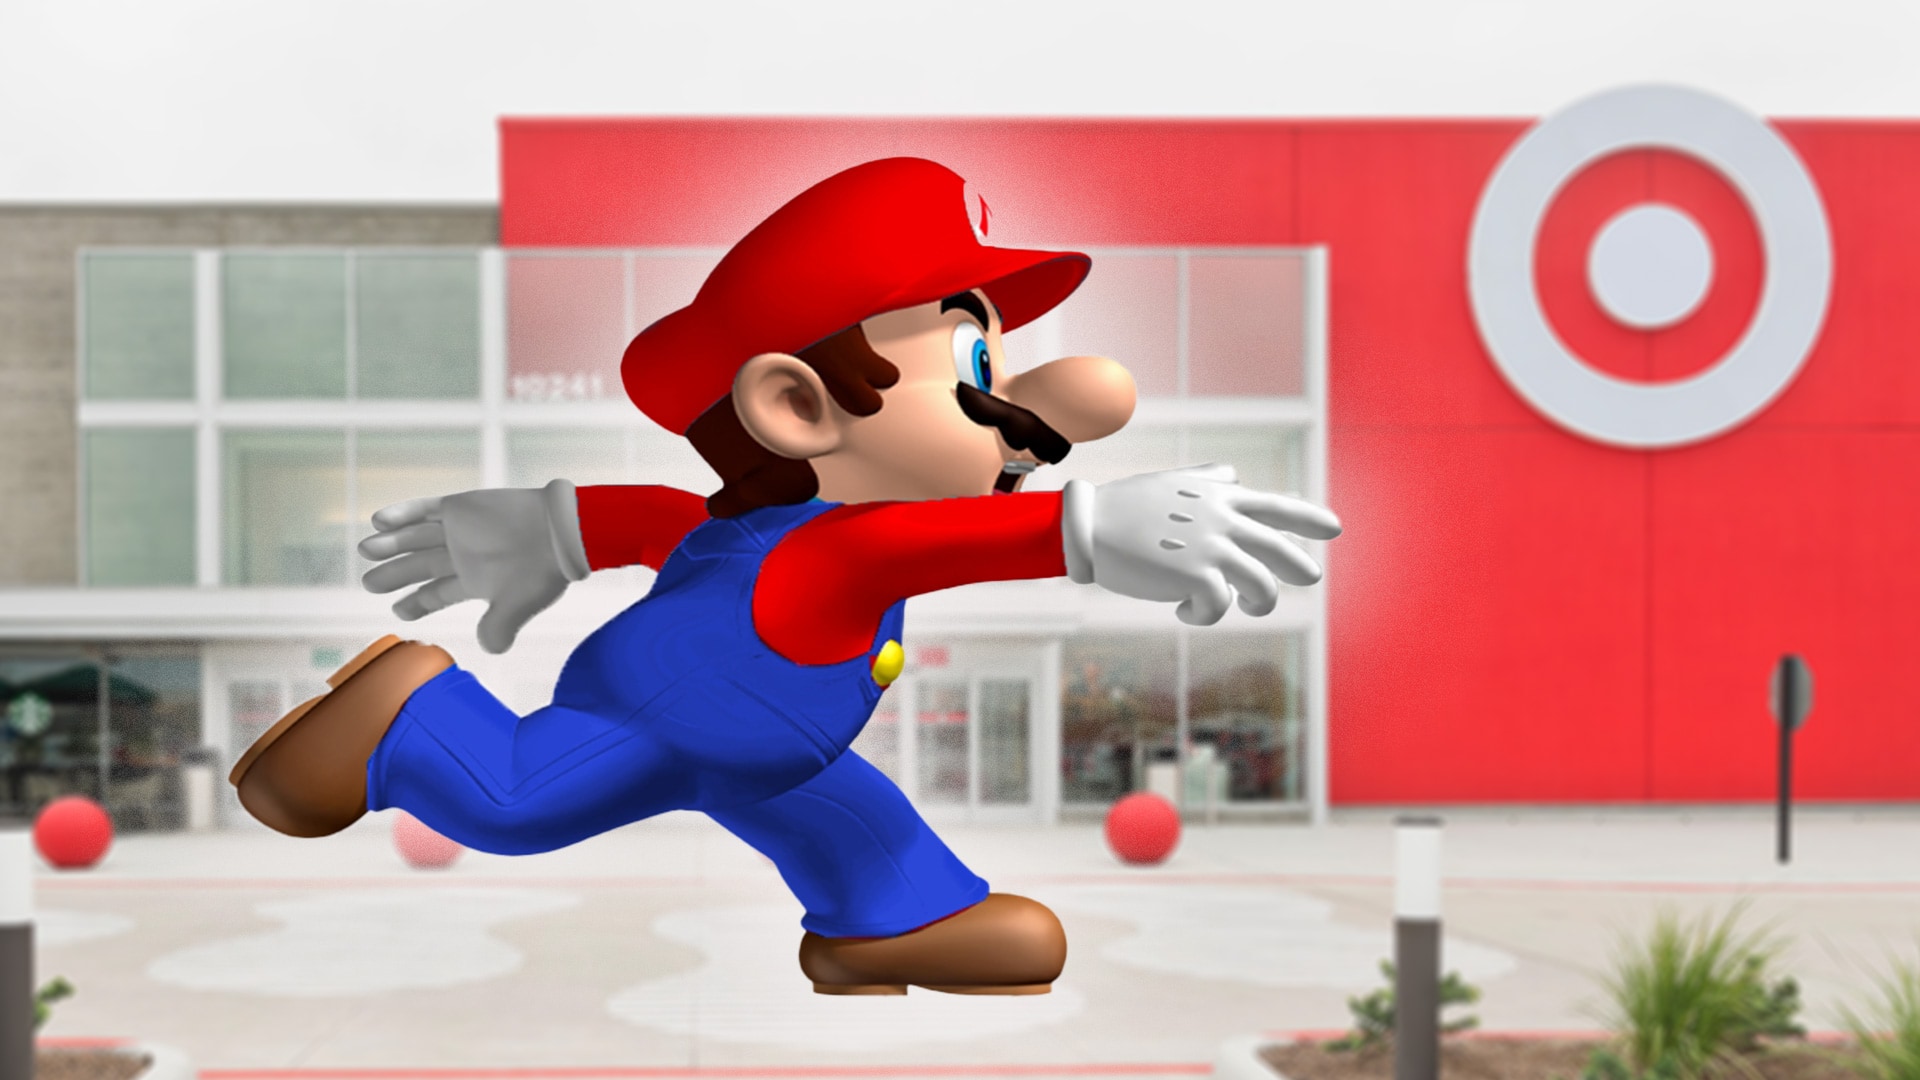 Mario running to Target store